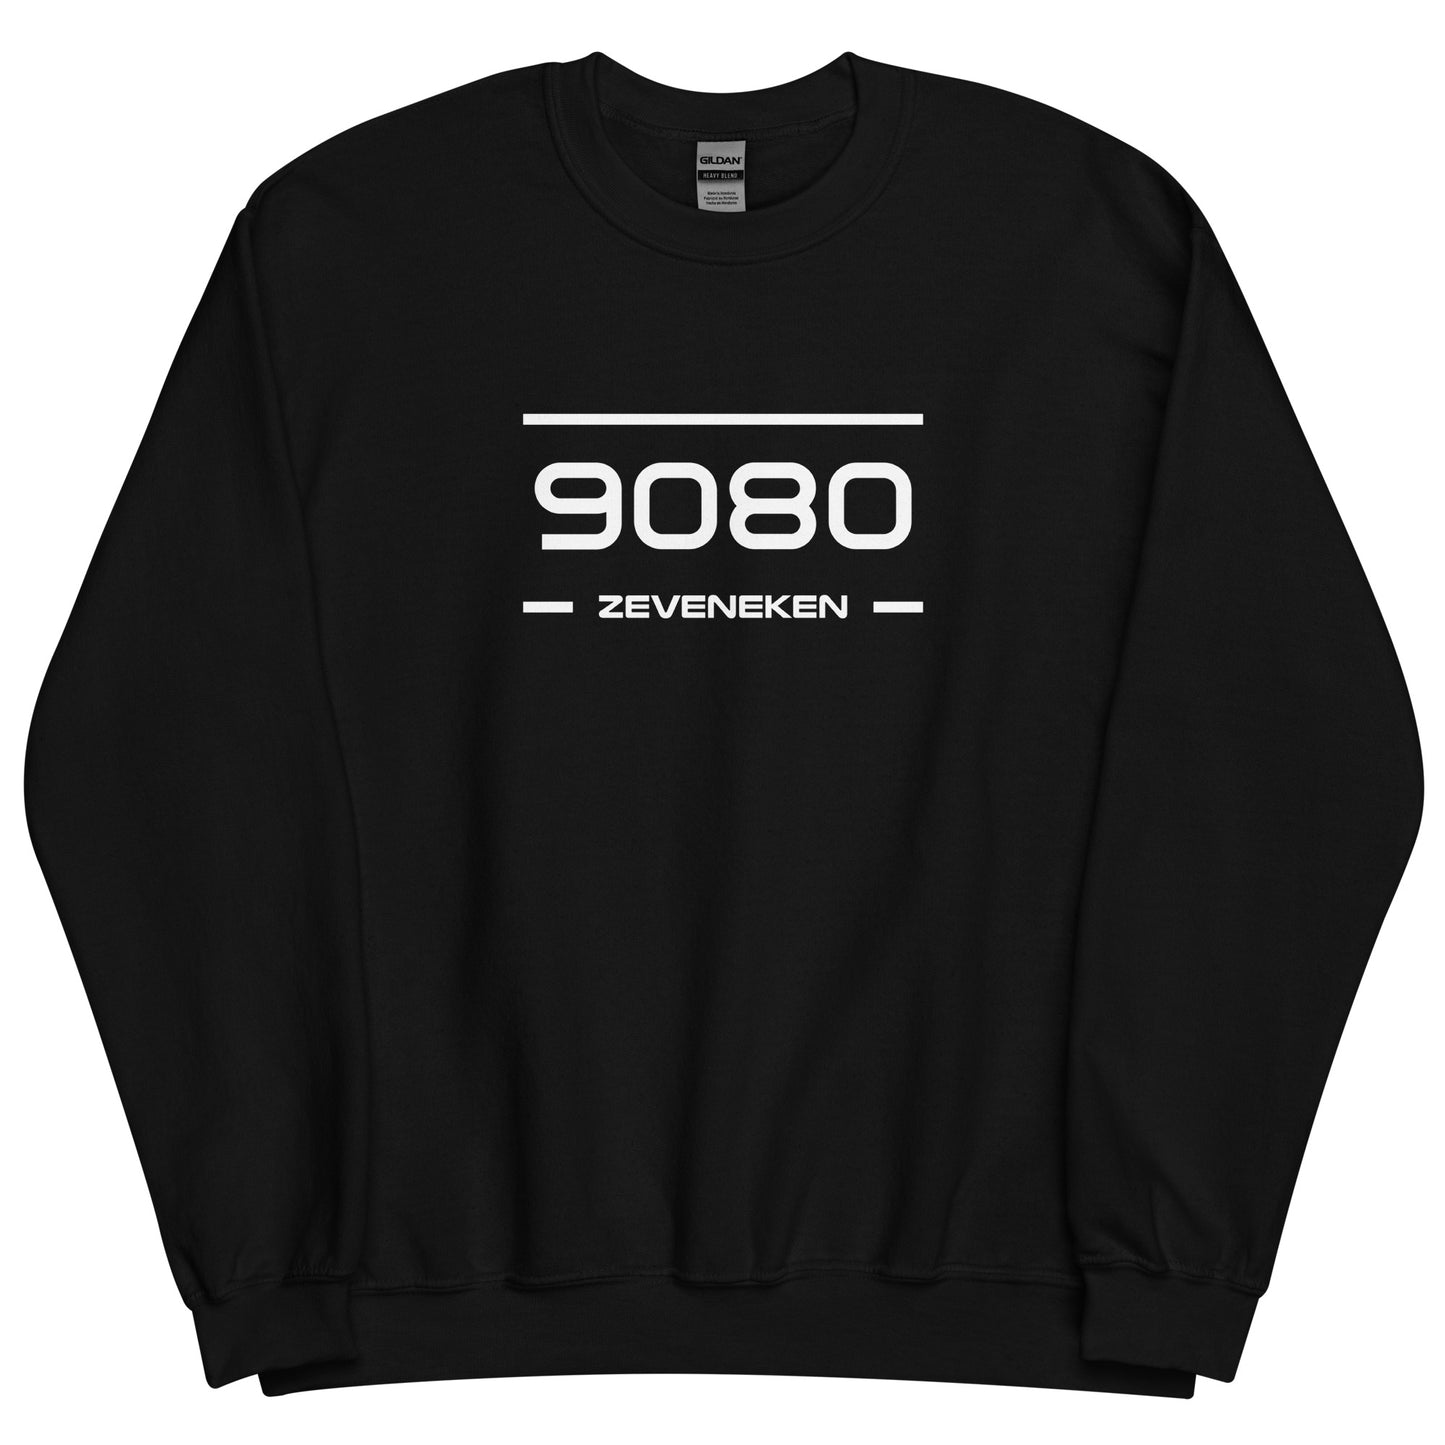 Sweater - 9080 - Zeveneken (M/V)